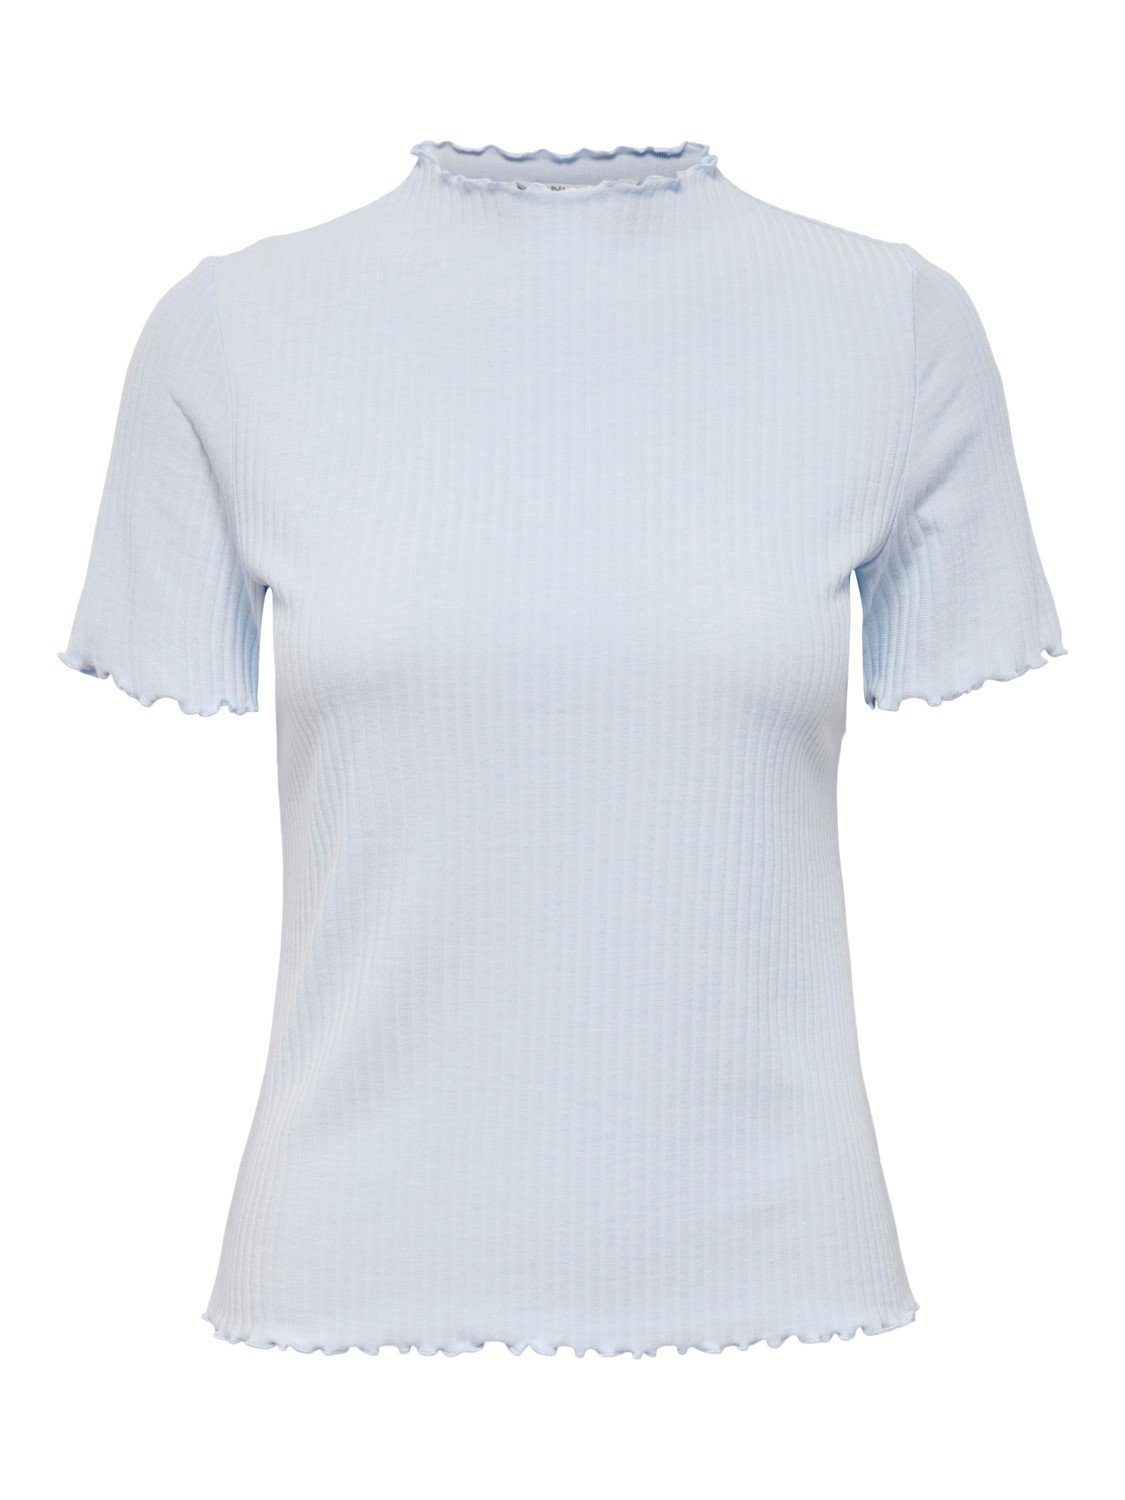 Hellblau (1-tlg) ONLEMMA Cropped Stehkragen T-Shirt 4018 Top ONLY Gewellt in Geripptes T-Shirt Rundhals